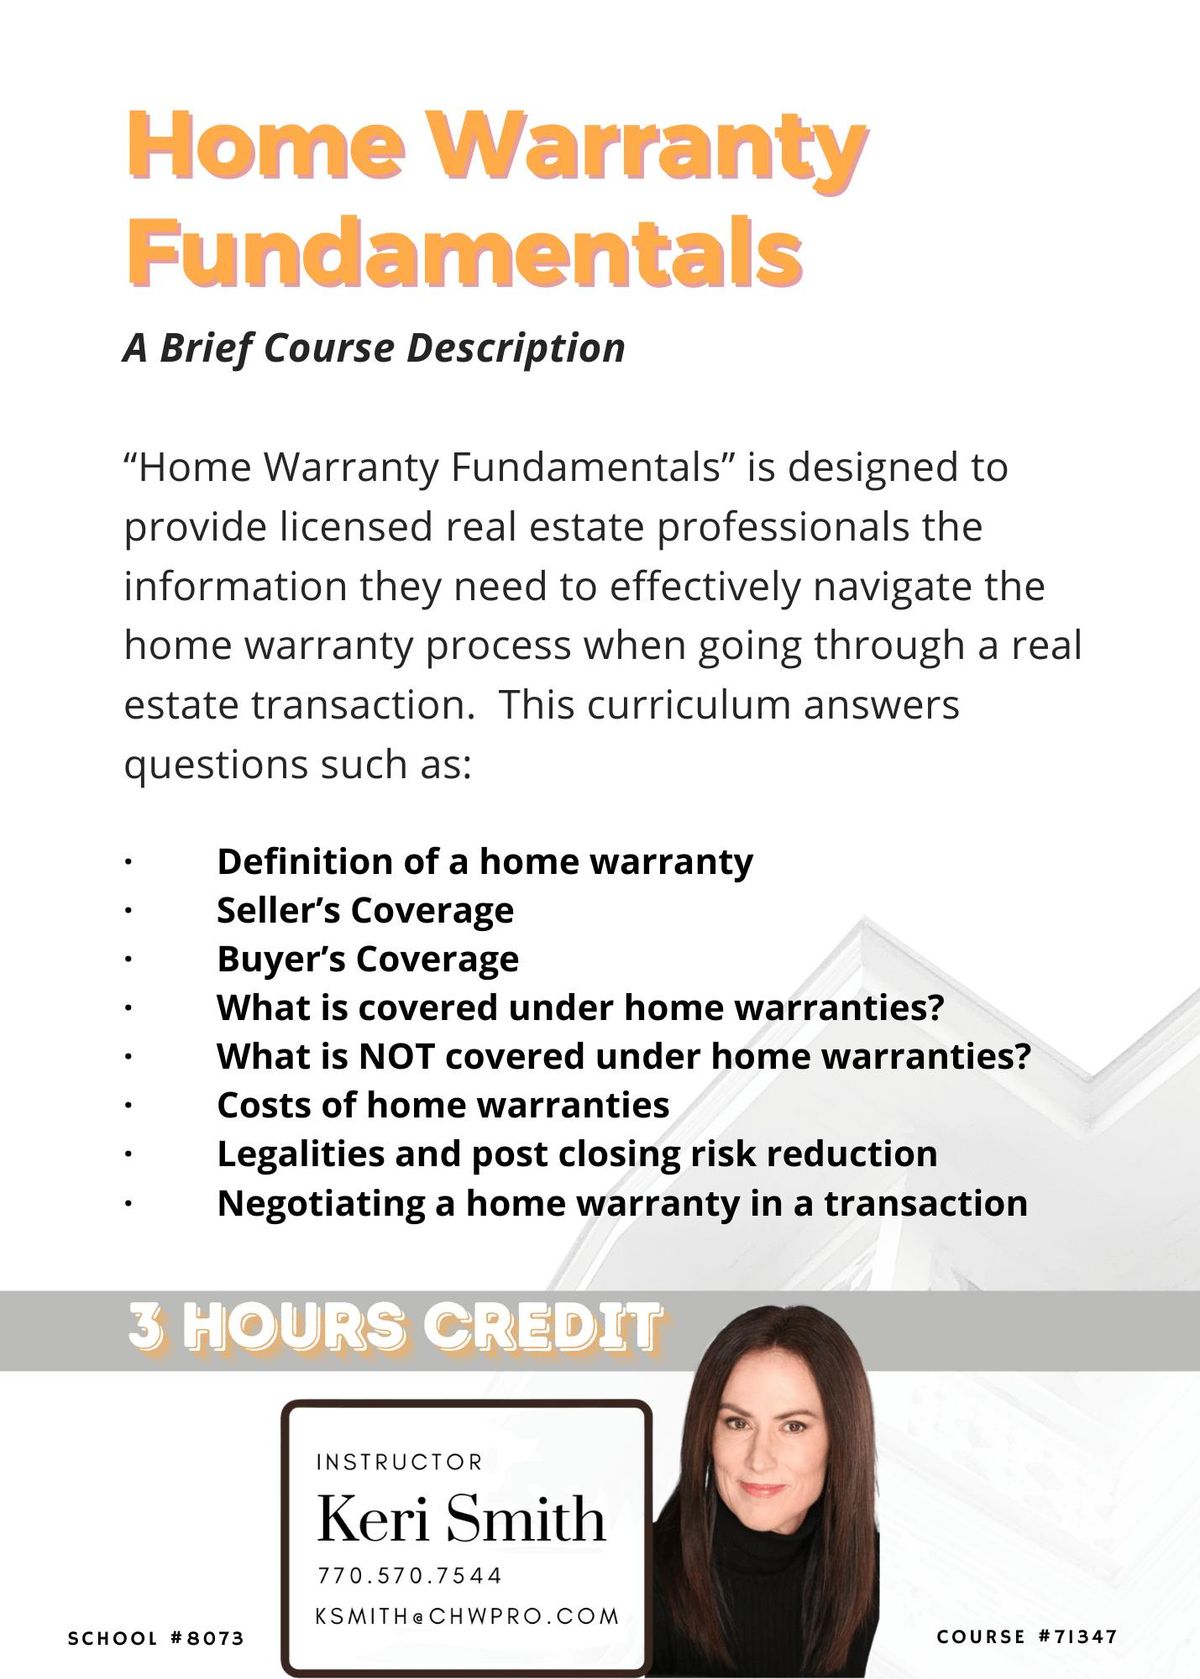 Home Warranty Fundamentals